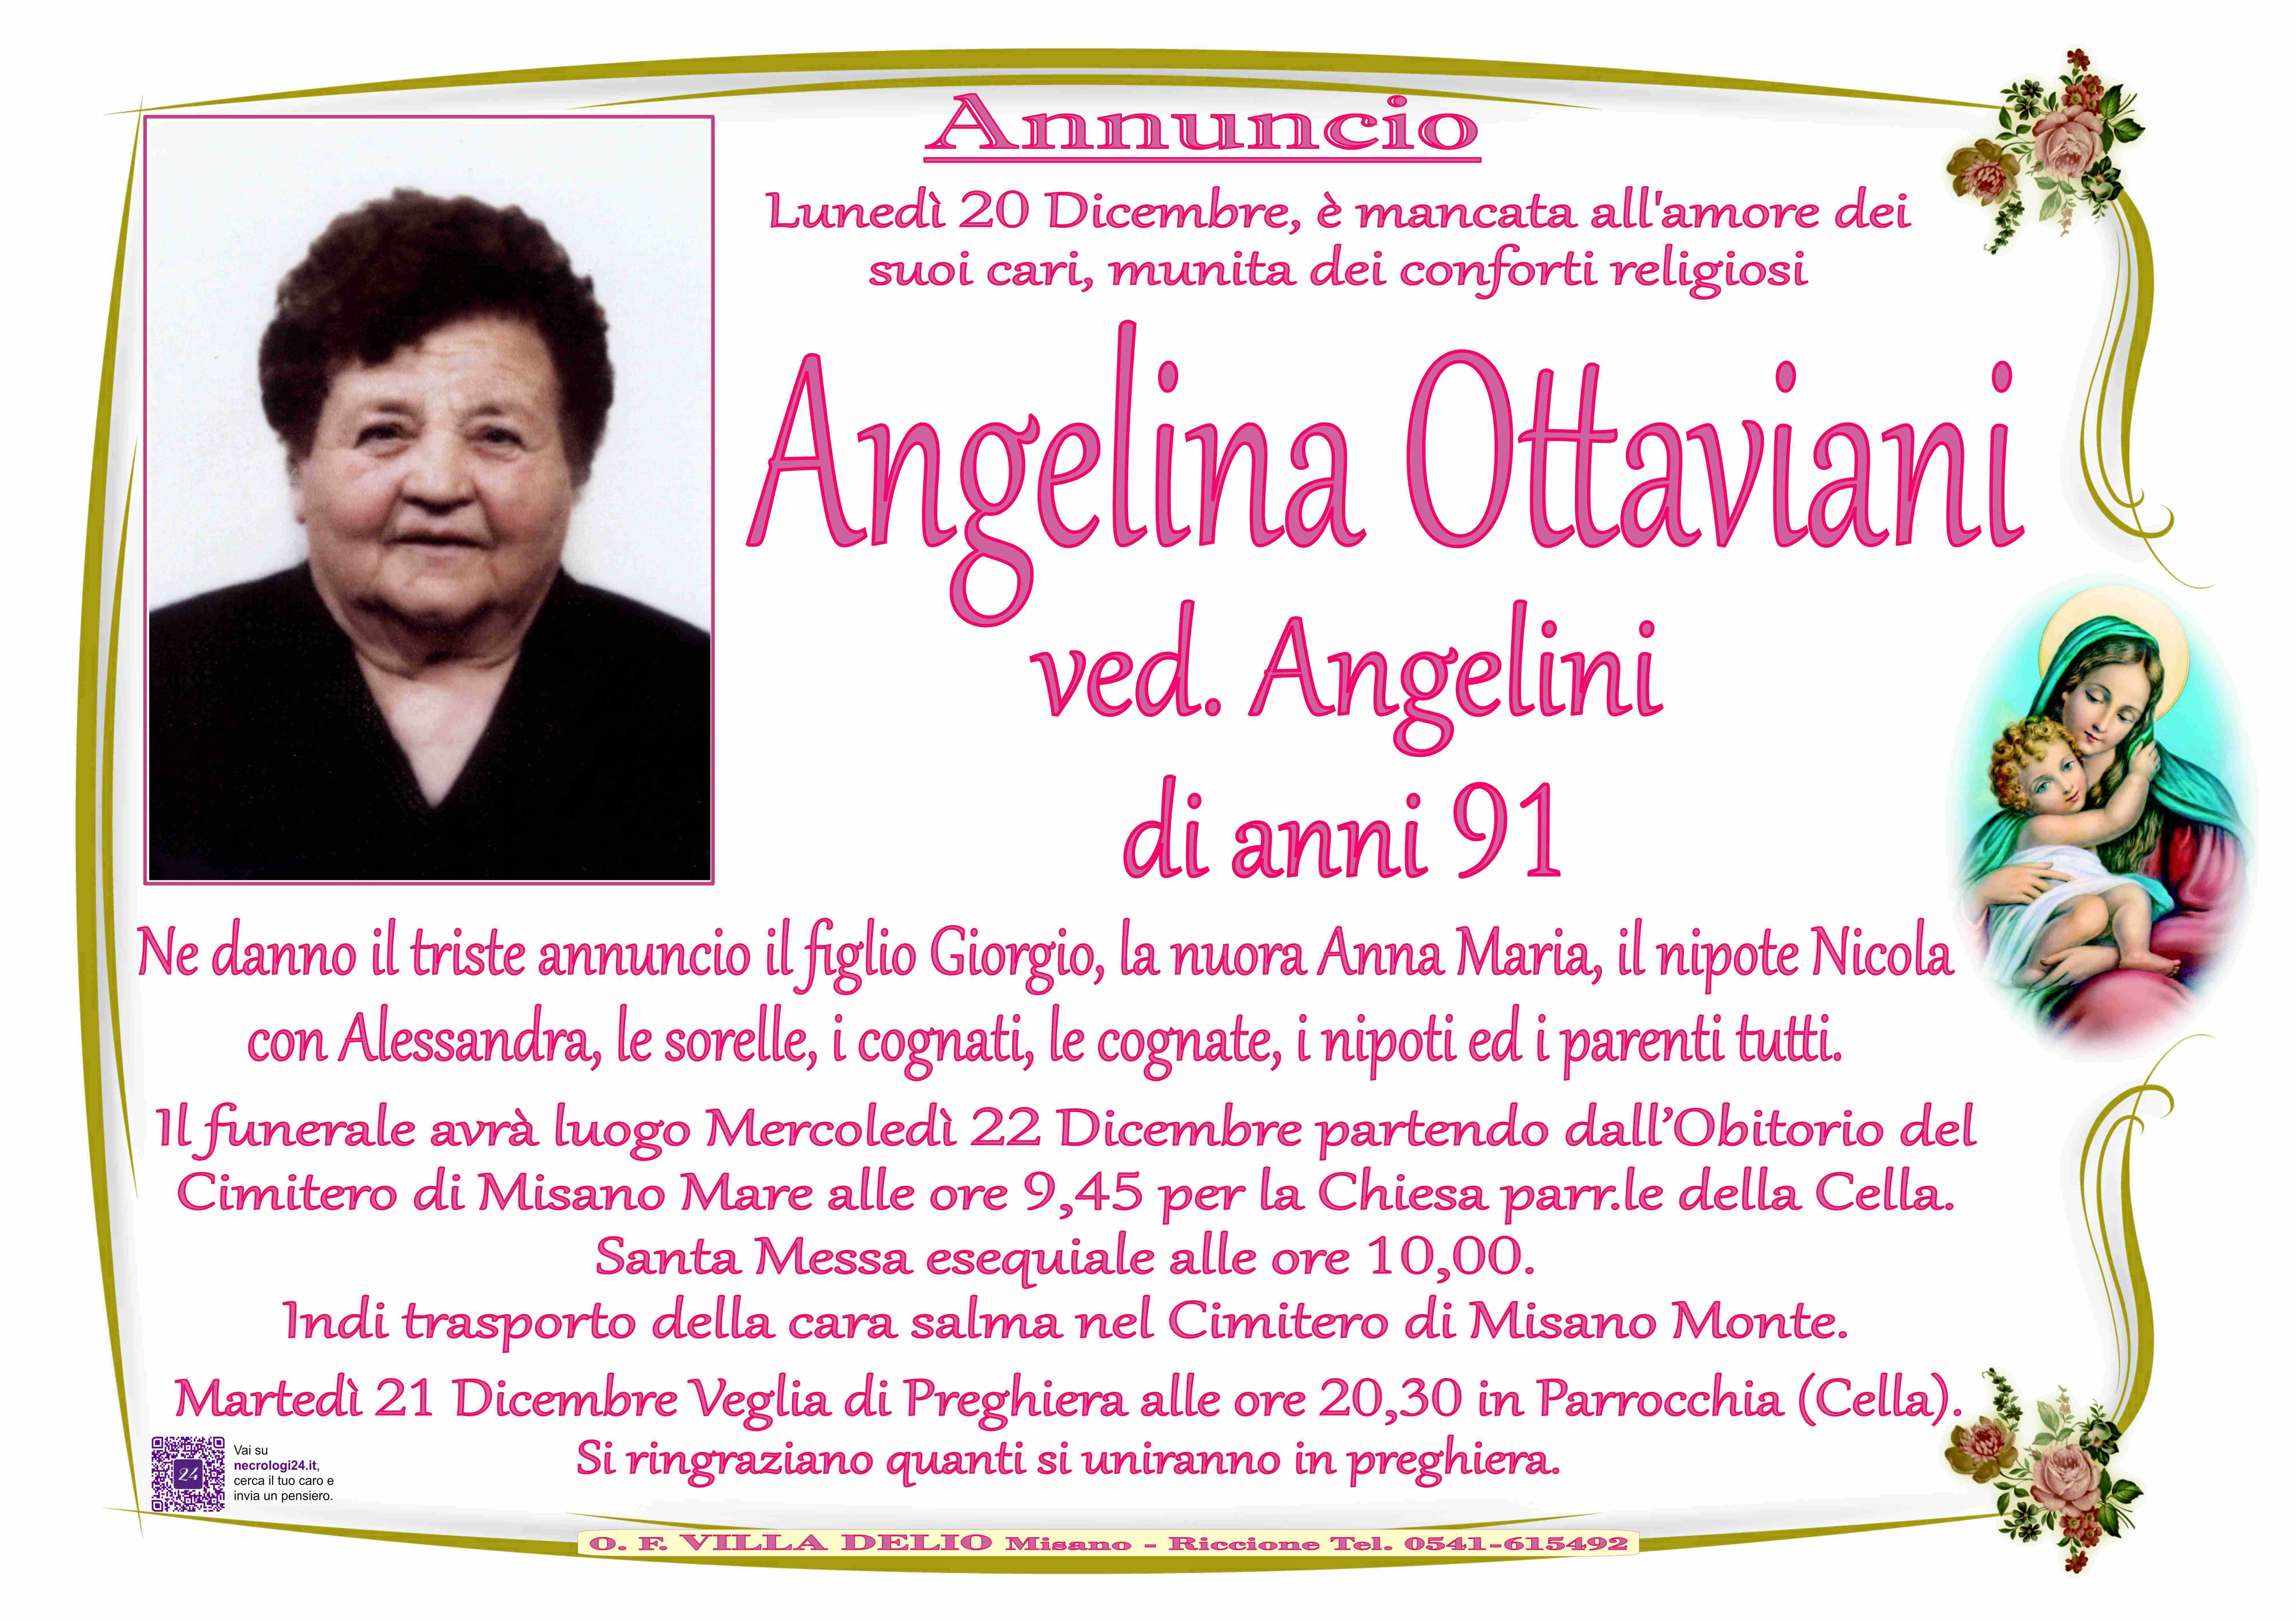 Angelina Ottaviani